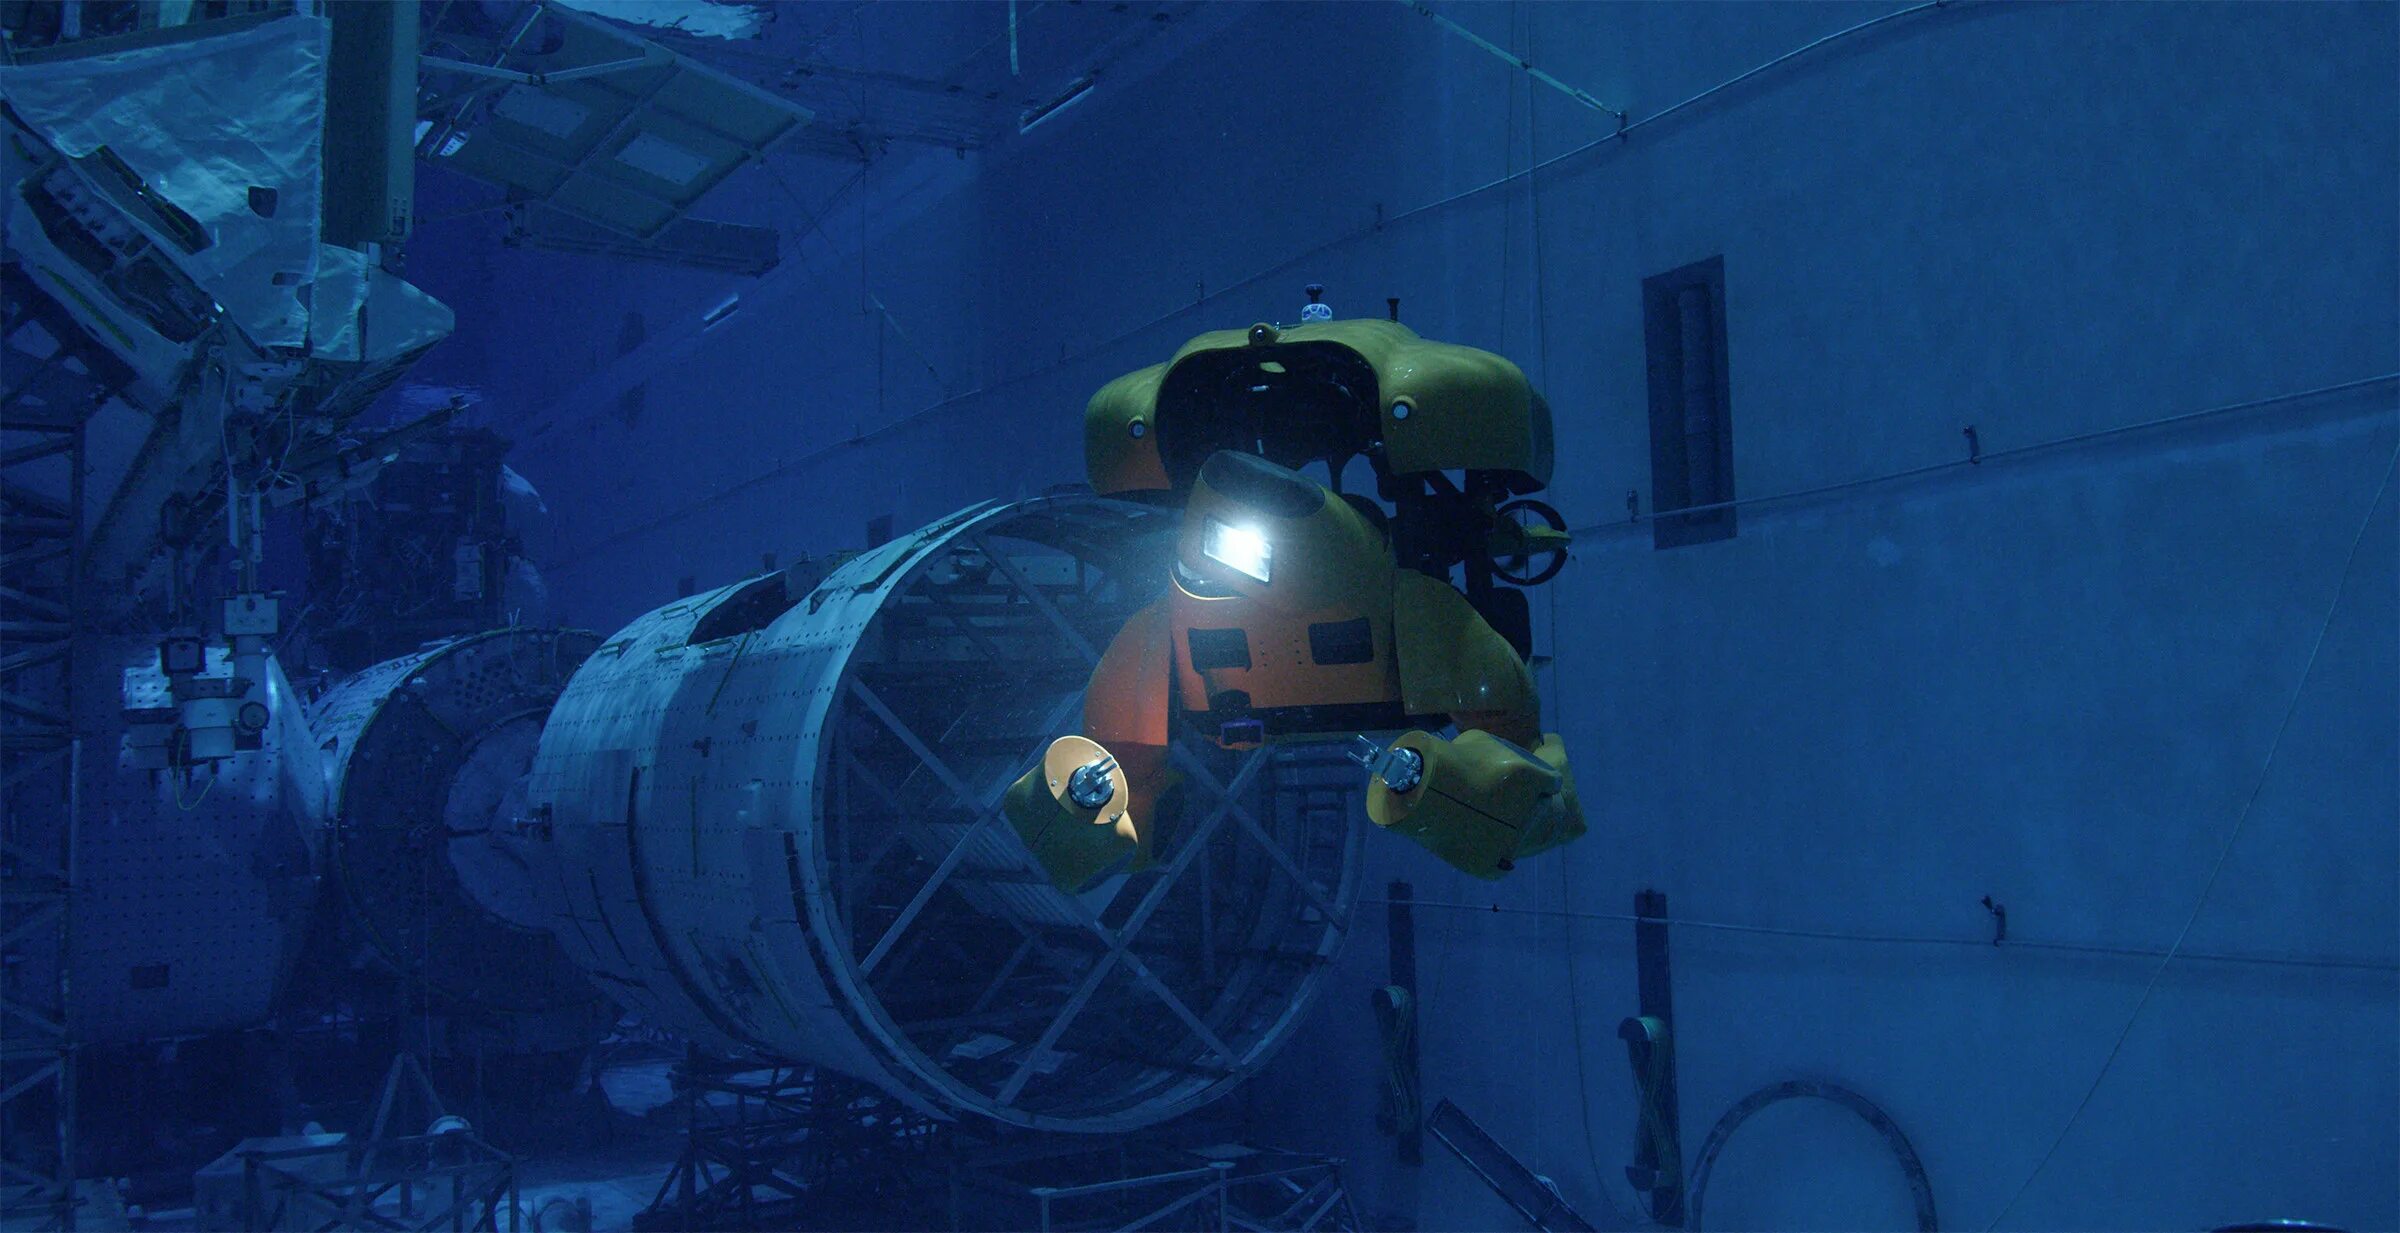 Подводные технические системы. Подводный робот Акванавт. Подводный аппарат AUV-200. Фалькон подводный аппарат. Подводный аппарат Алвин.